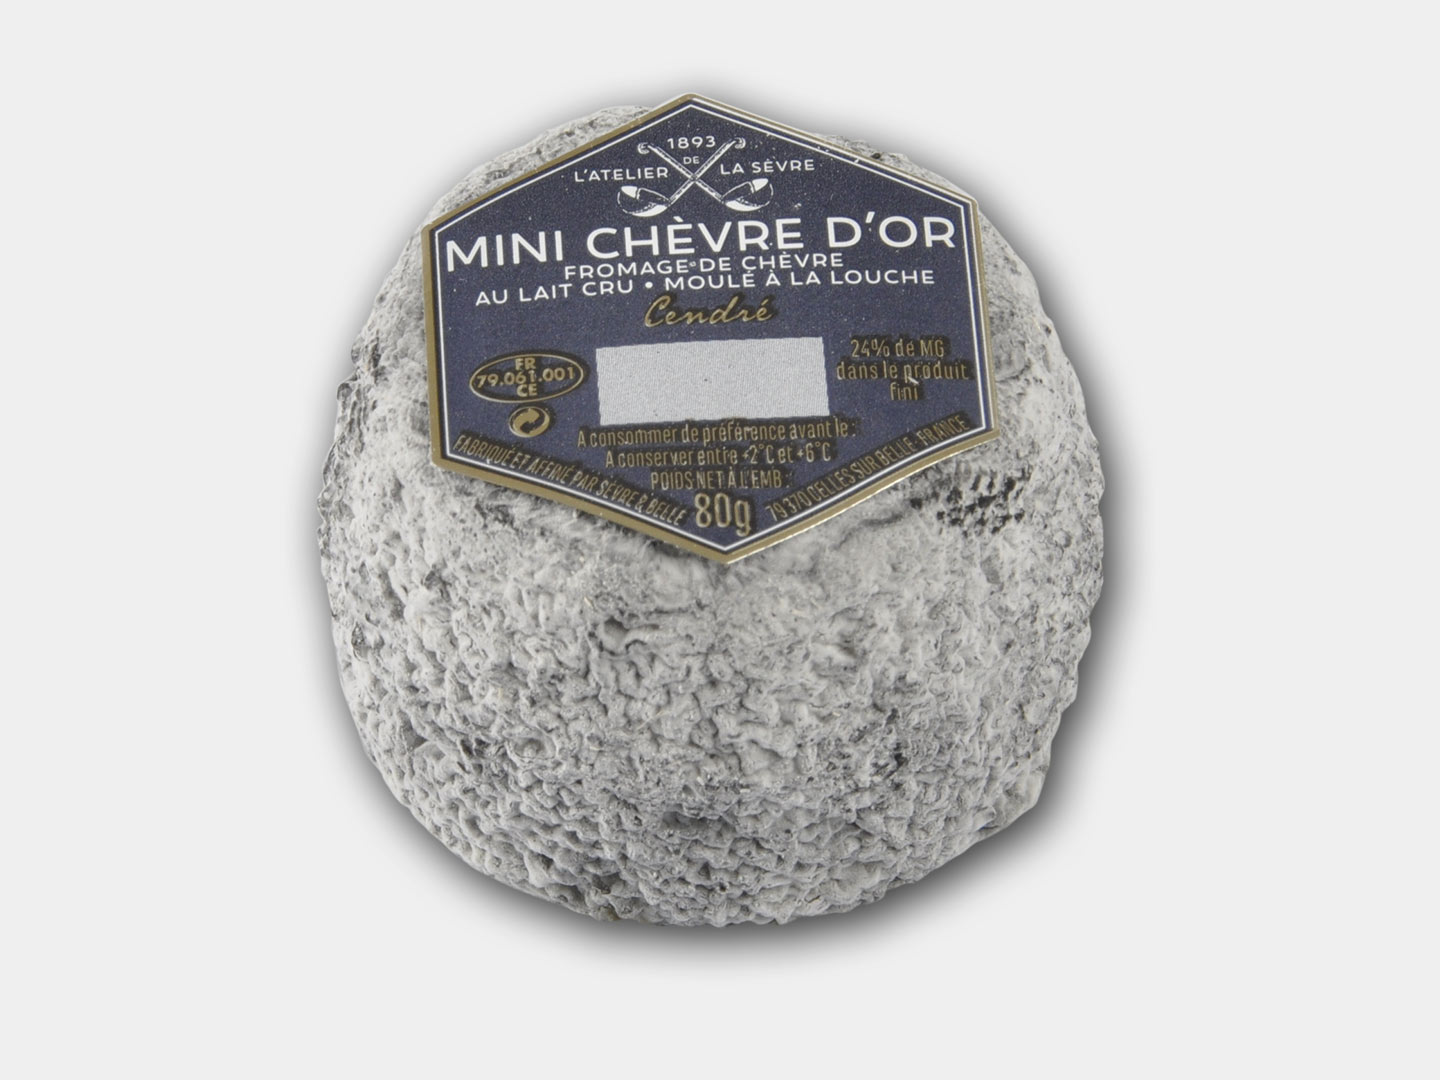 Le mini Chèvre d'or cendré 80g - fromage de chèvre au lait cru - moulé à la louche - Atelier de la sèvre